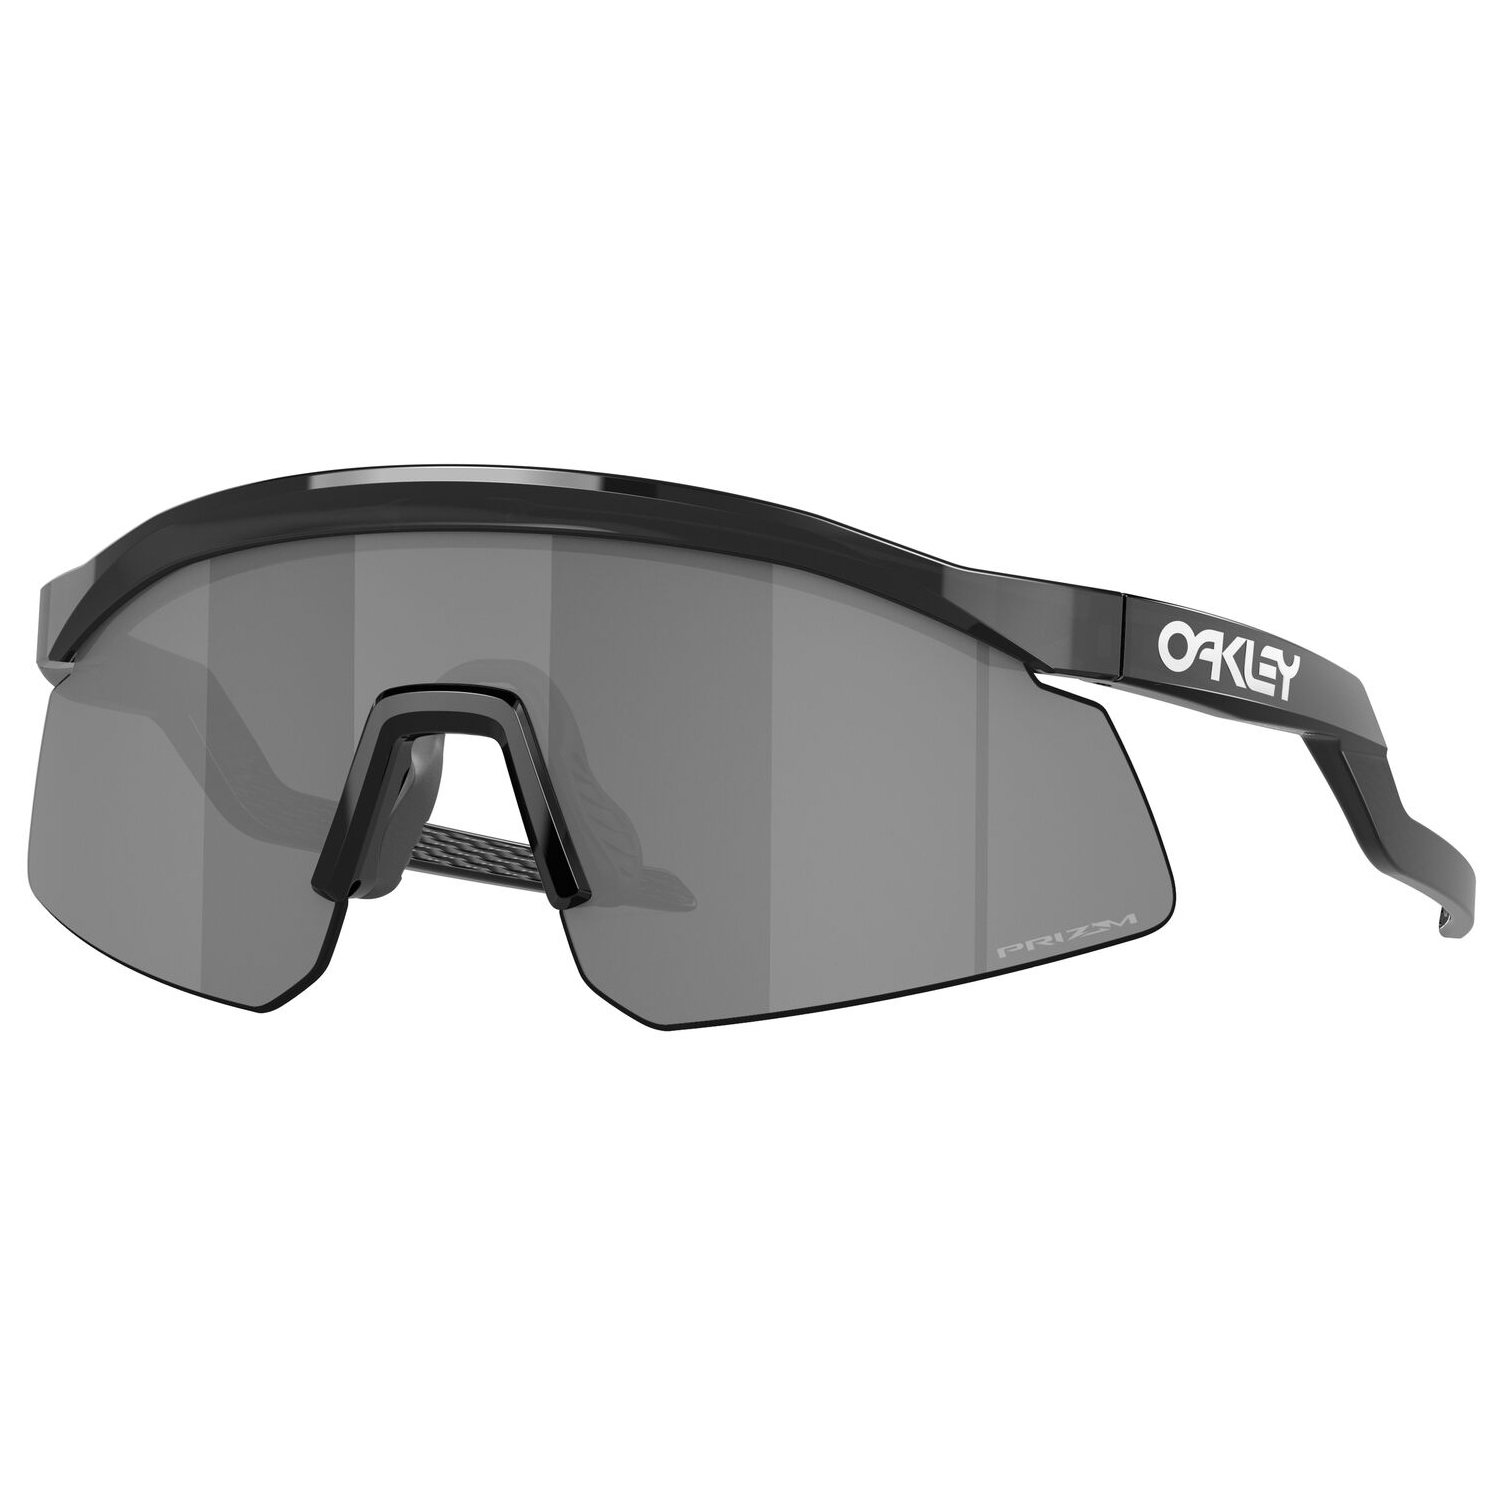 Велосипедные очки Oakley Hydra Prizm S3 (VLT 11%), цвет Black Ink